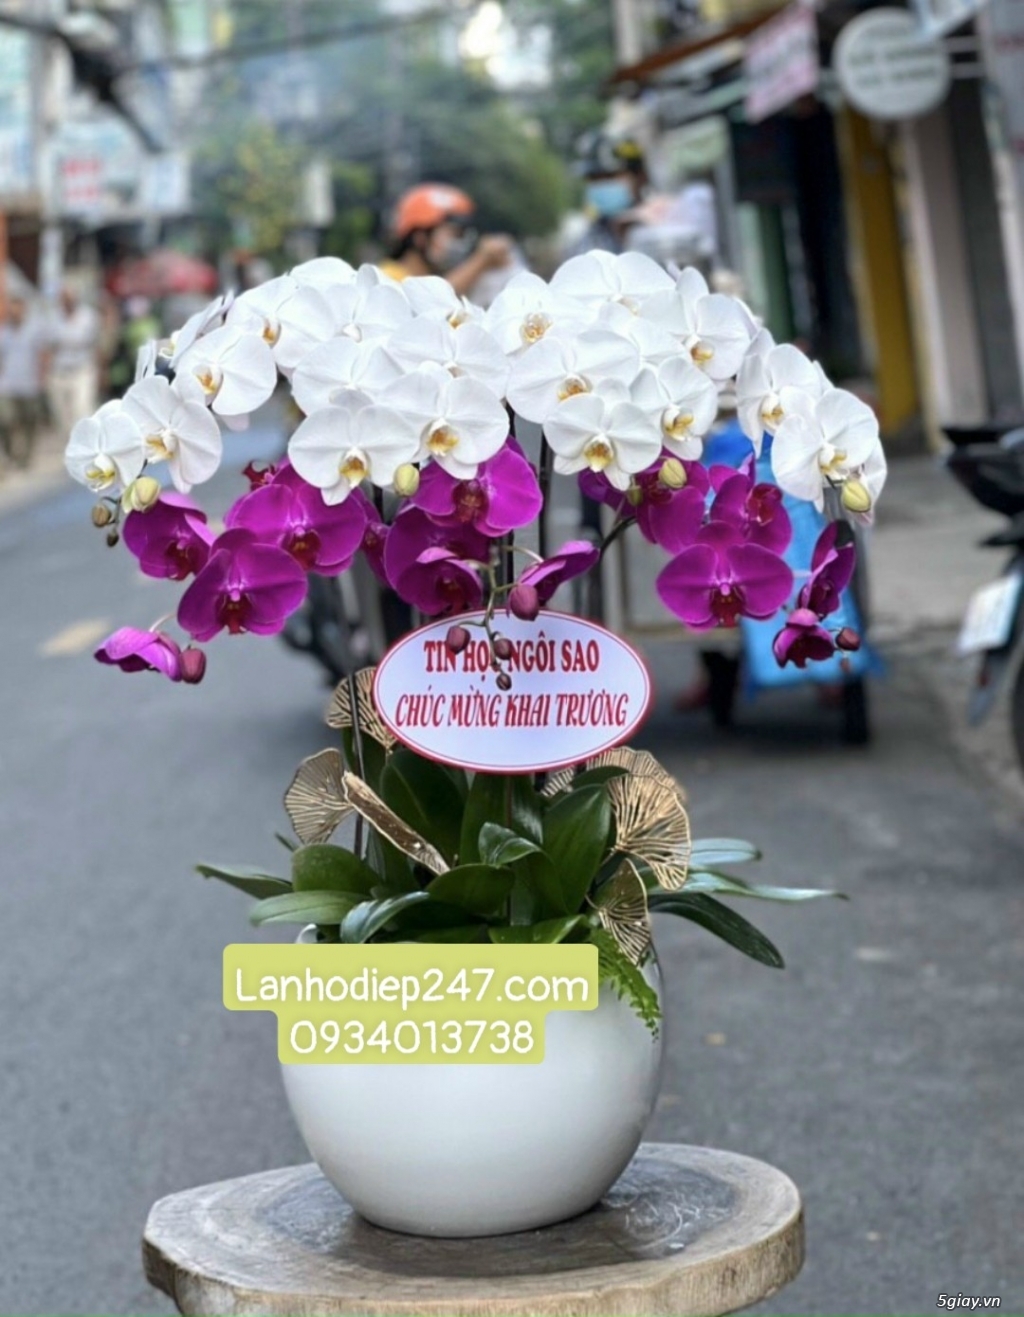 Shop Lan Hồ Điệp Sài Gòn 247 chuyên cung cấp hoa tươi uy tín số 1 HCM - 13